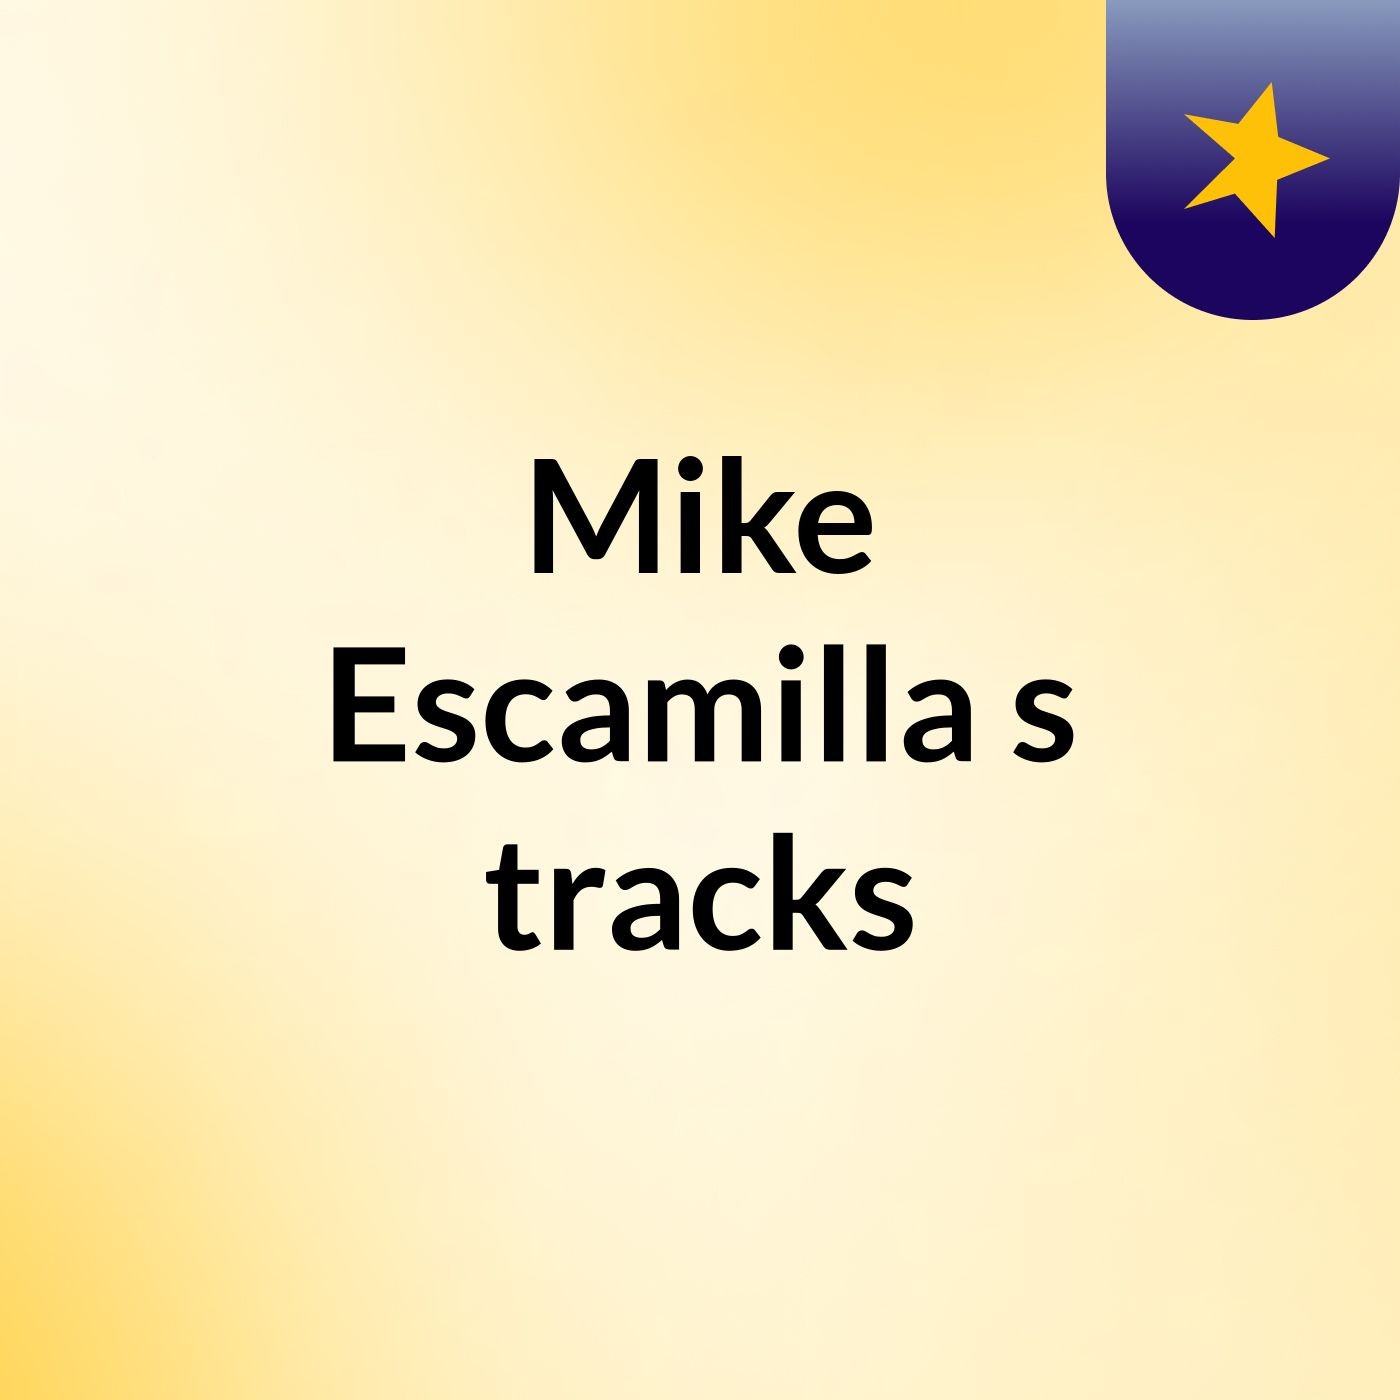 Mike Escamilla's tracks